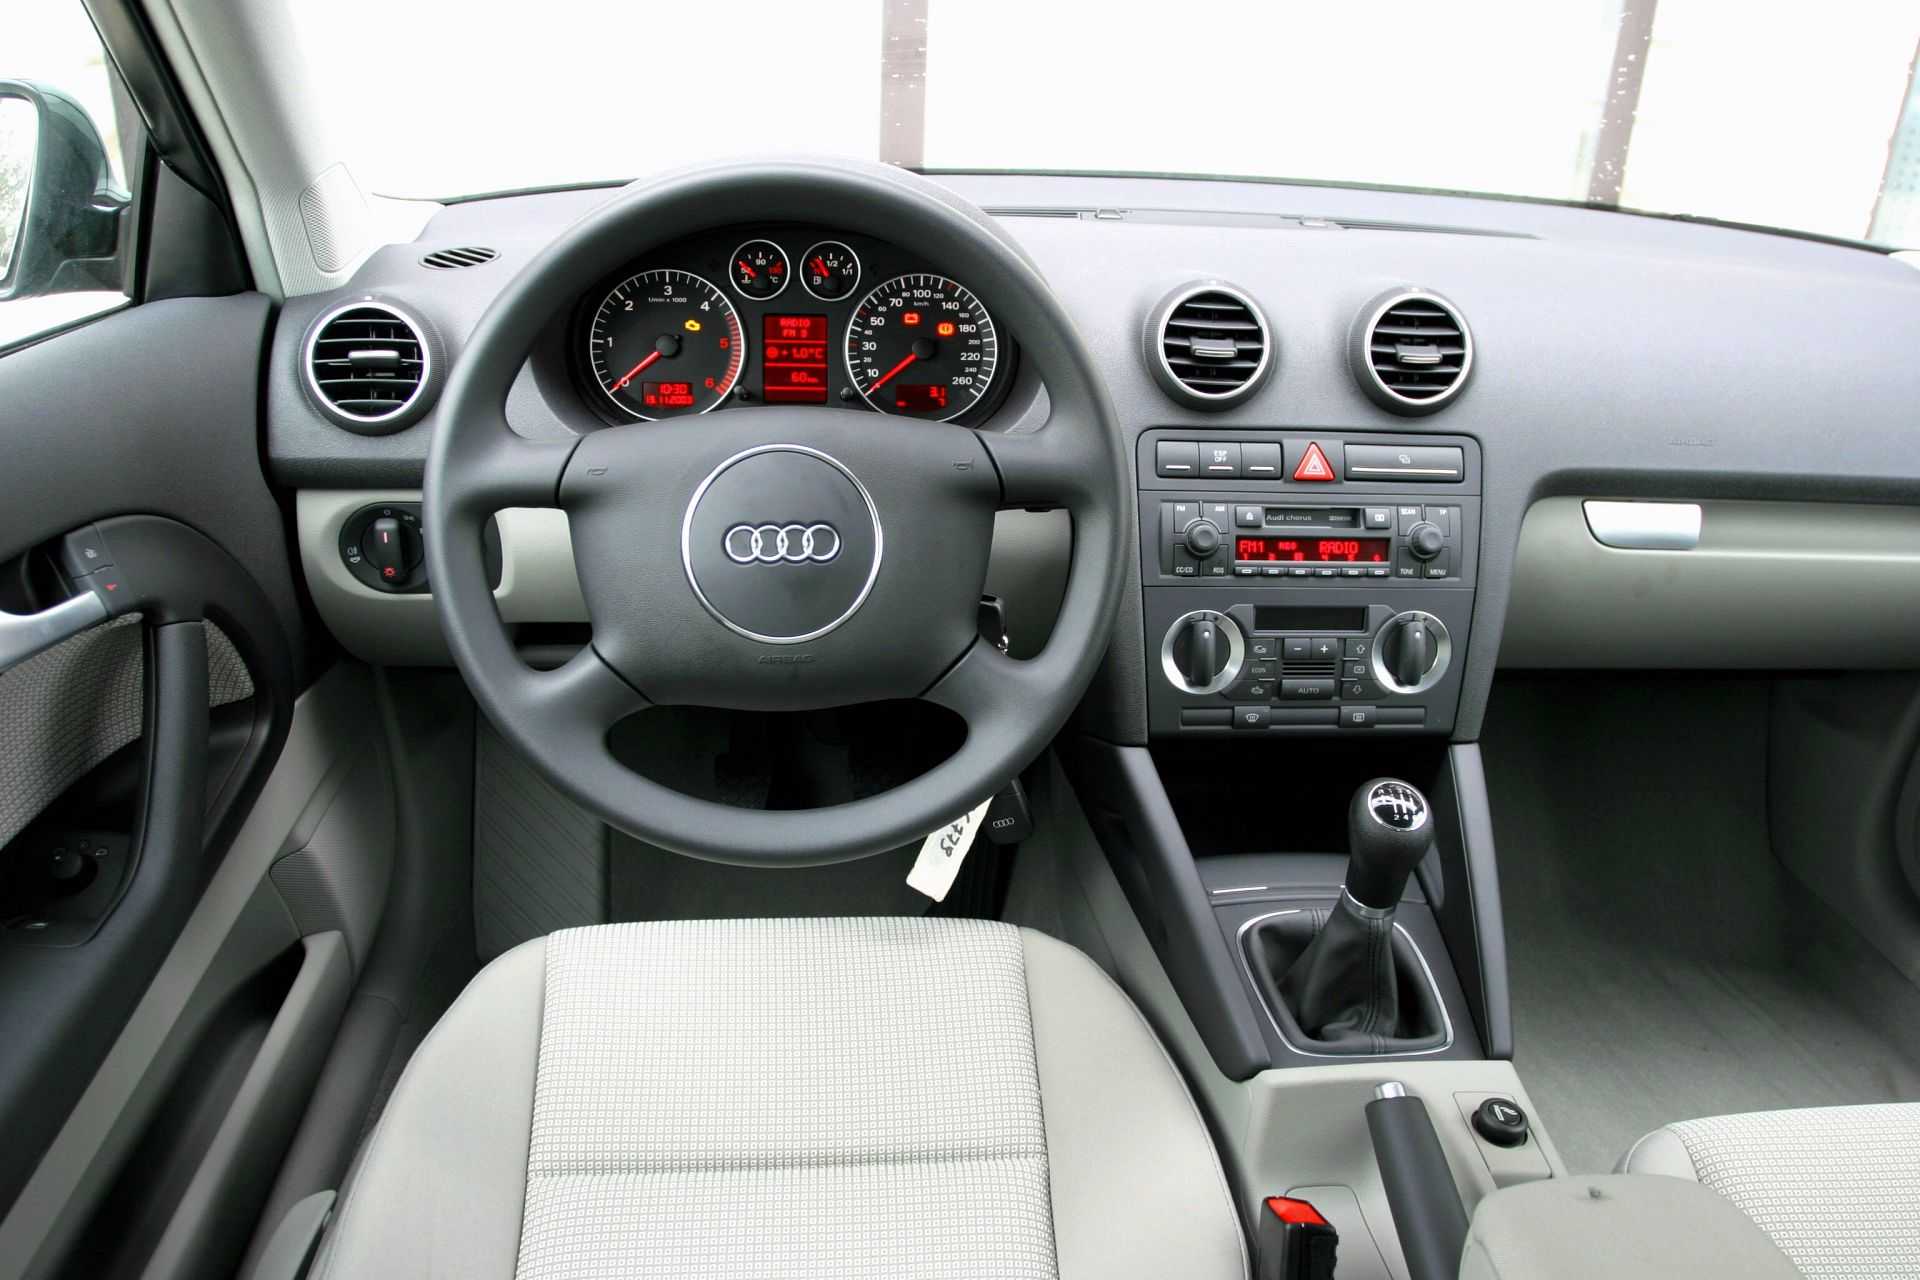 Audi a3 ii (8p, 2003-2012) - проблемы и неисправности